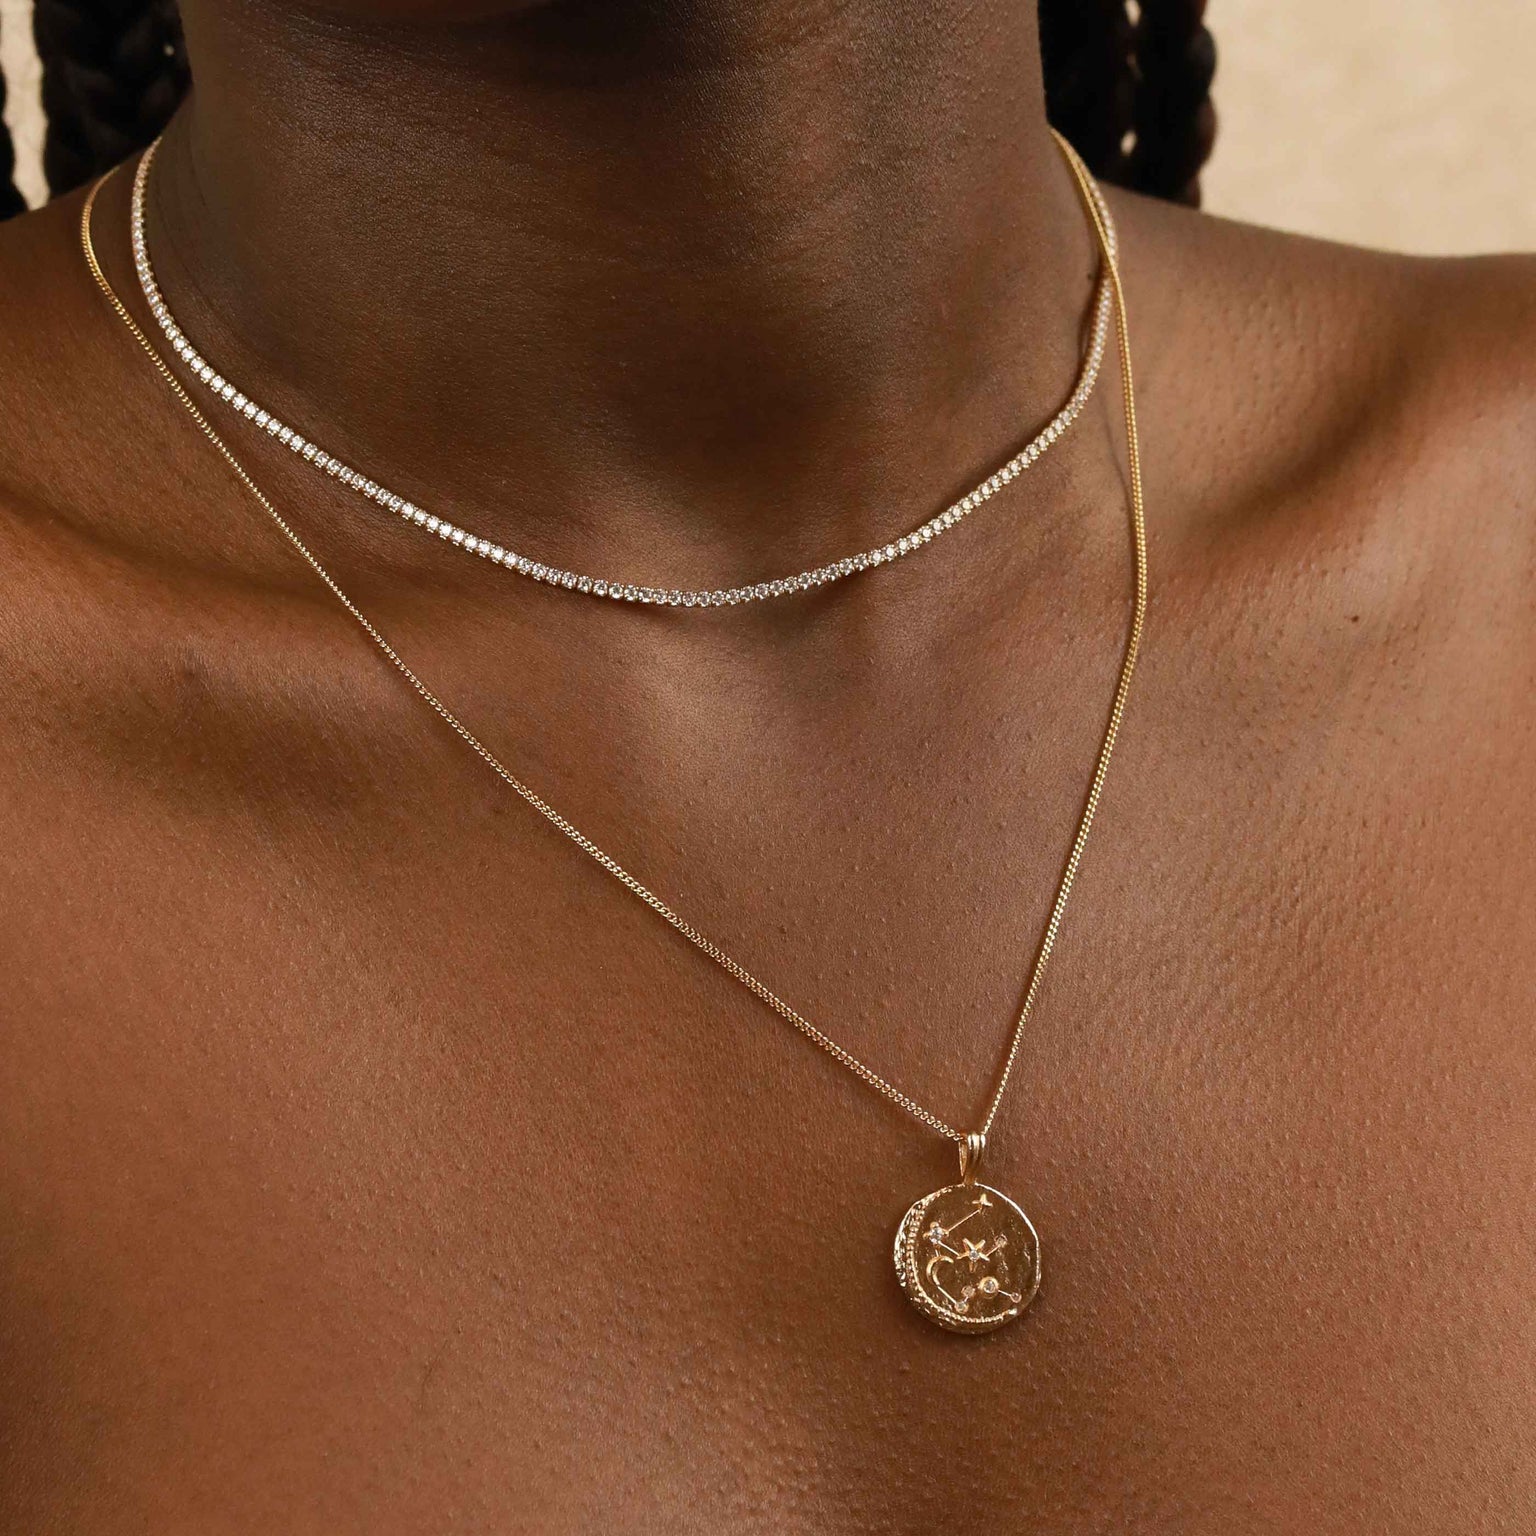 Aquarius Zodiac Pendant Necklace in Gold